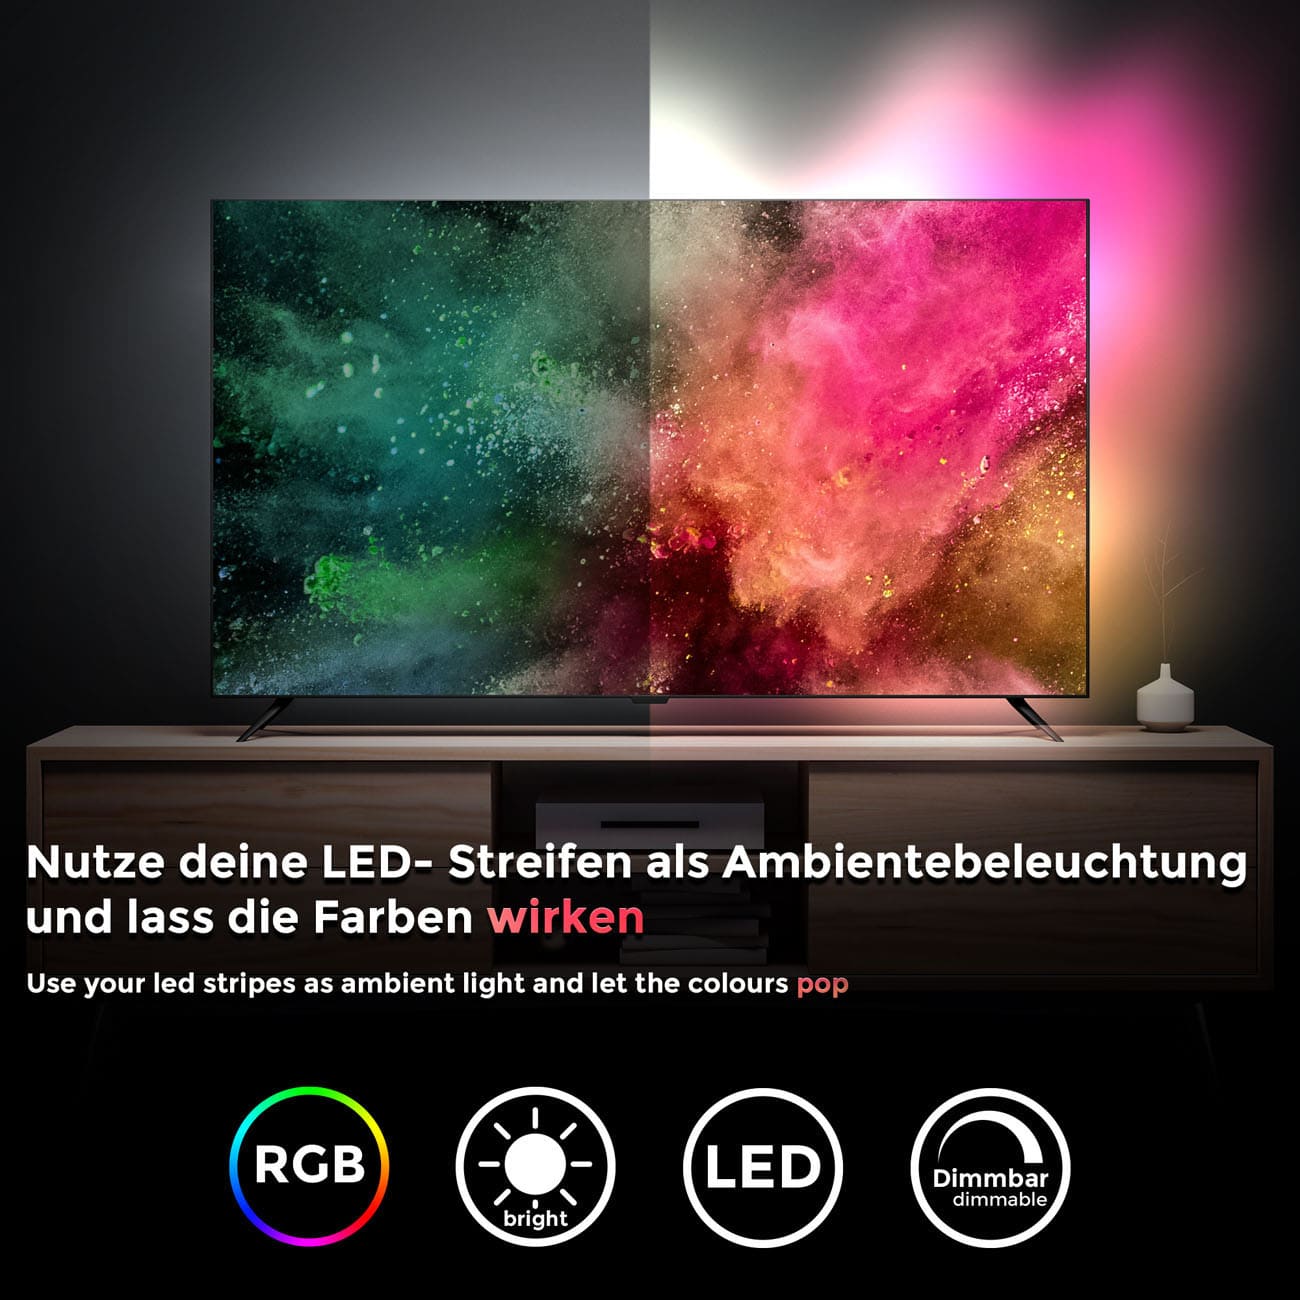 Smartes LED Licht-Band - 2 Meter - RGB Stripe IOS Android dimmbar 9W warmweiß Fernbedienung 60 LEDs flexibel kürzbar selbstklebend USB 5V | schwarz - 8